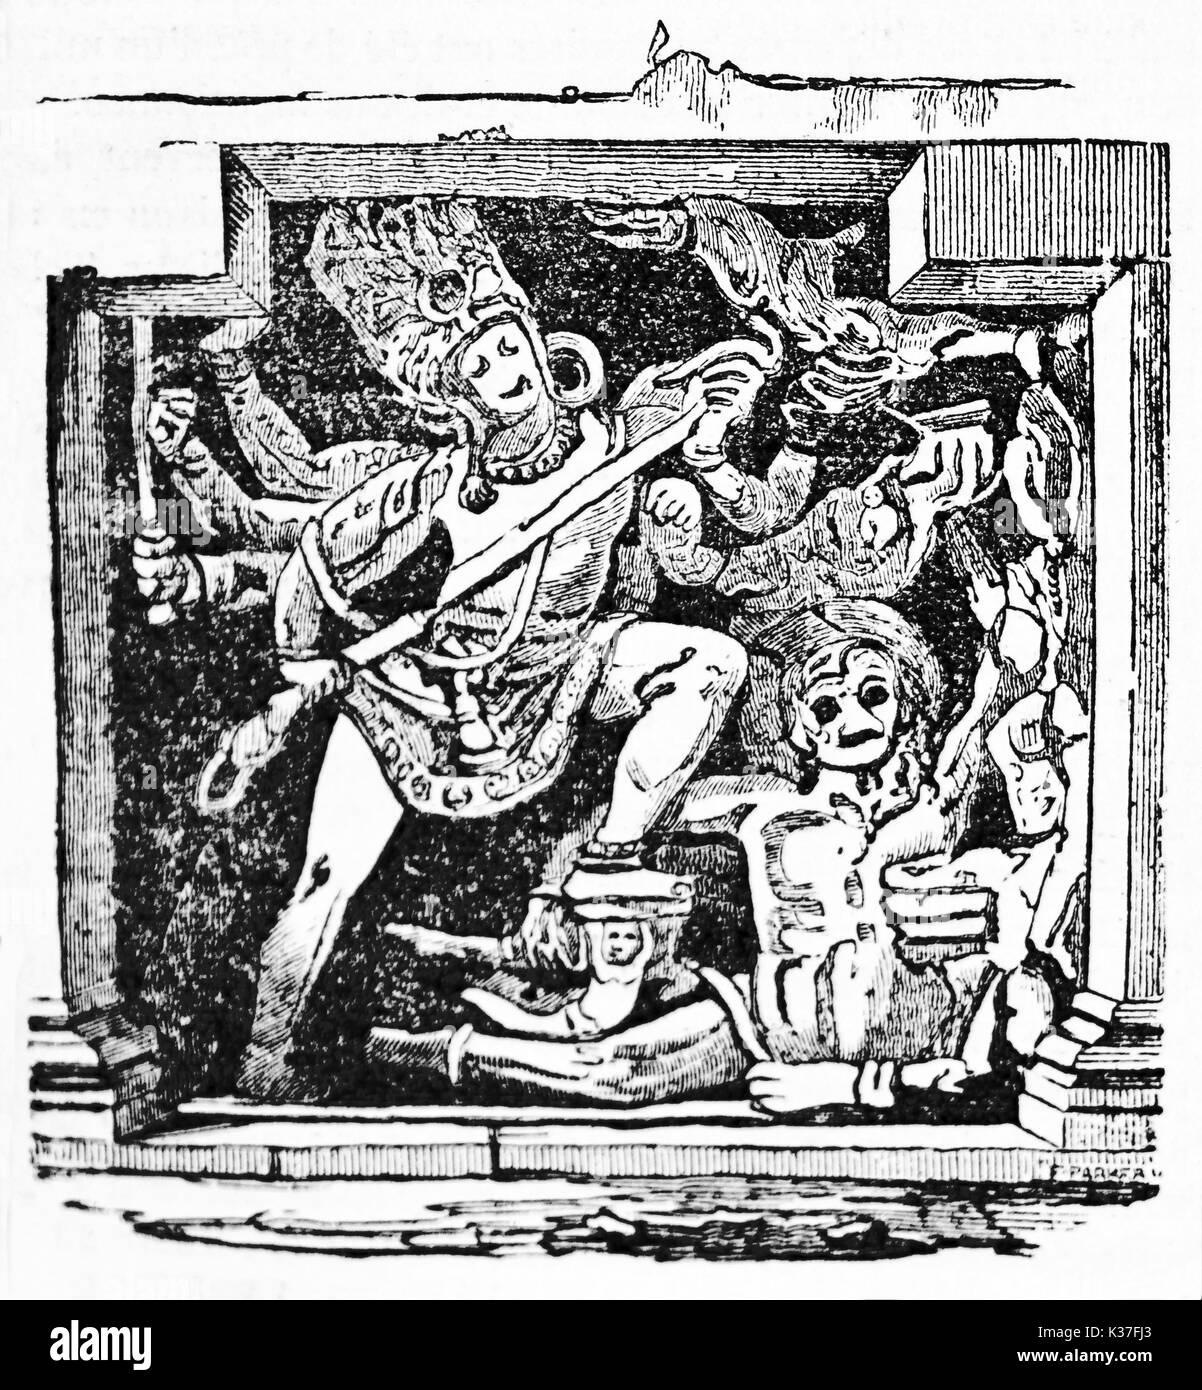 Alte Zeichen der indischen Mythologie, die Vervielfältigung von DUS-awtar Flachrelief in Ellora Höhlen gefunden Indien. Alte Illustration von unbekannter Autor auf Magasin Pittoresque Paris 1834 veröffentlicht. Stockfoto